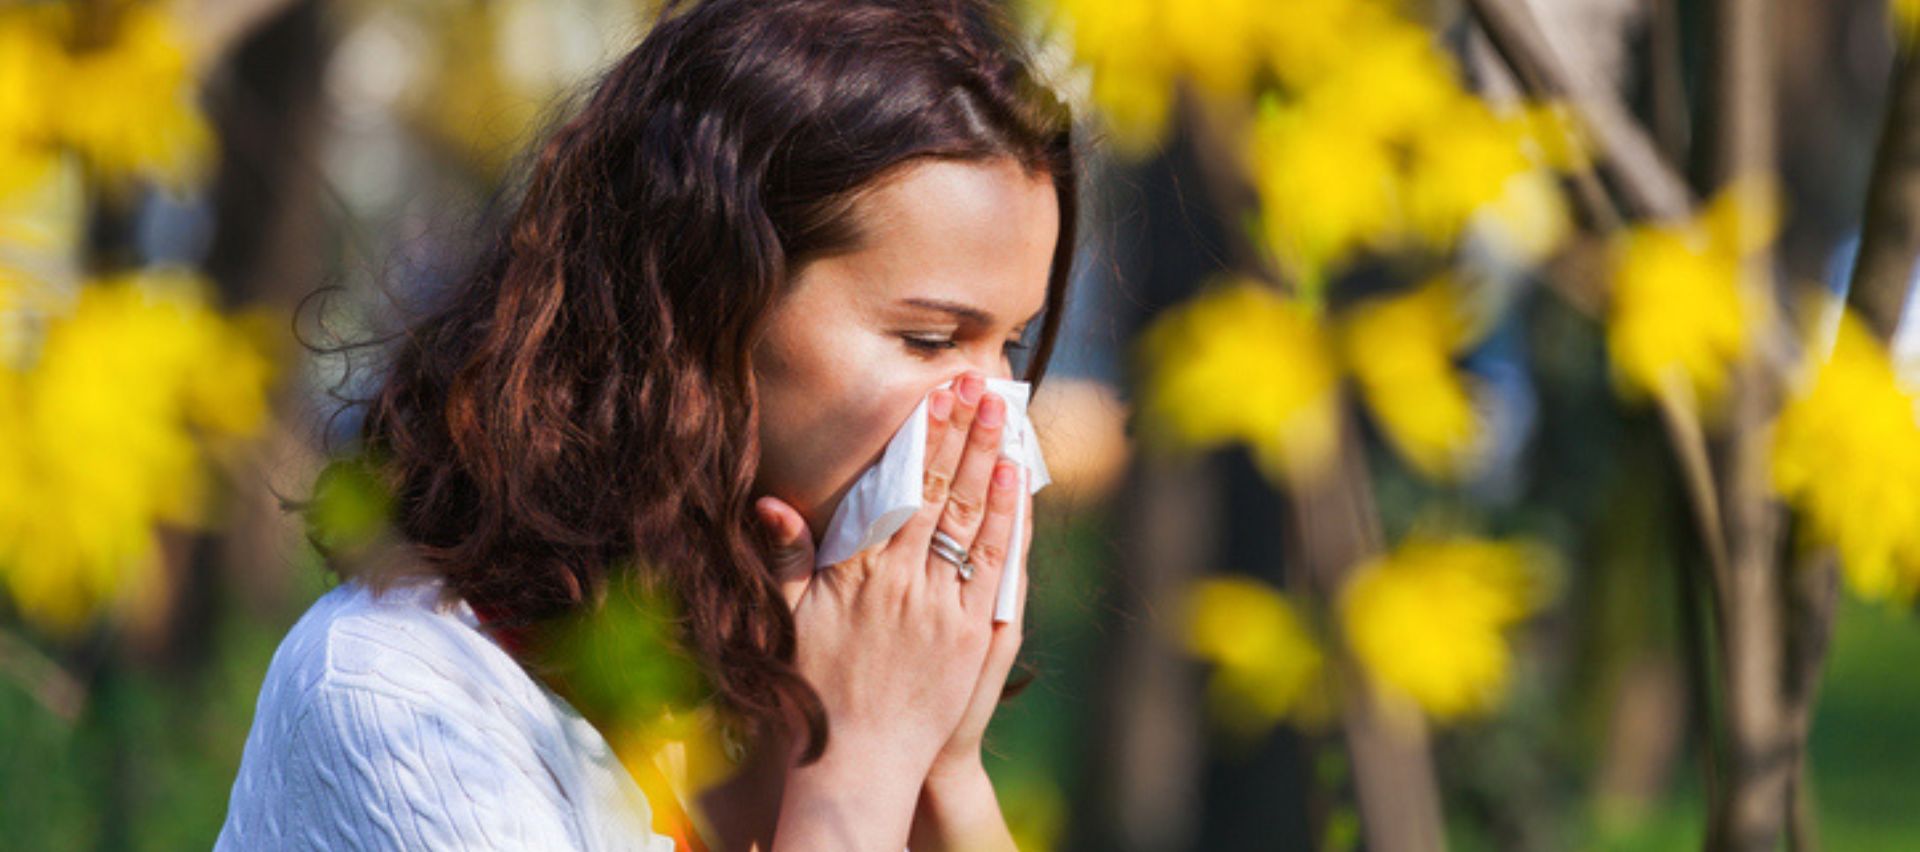 Primavera, tempo di allergie: come prevenirle e affrontarle